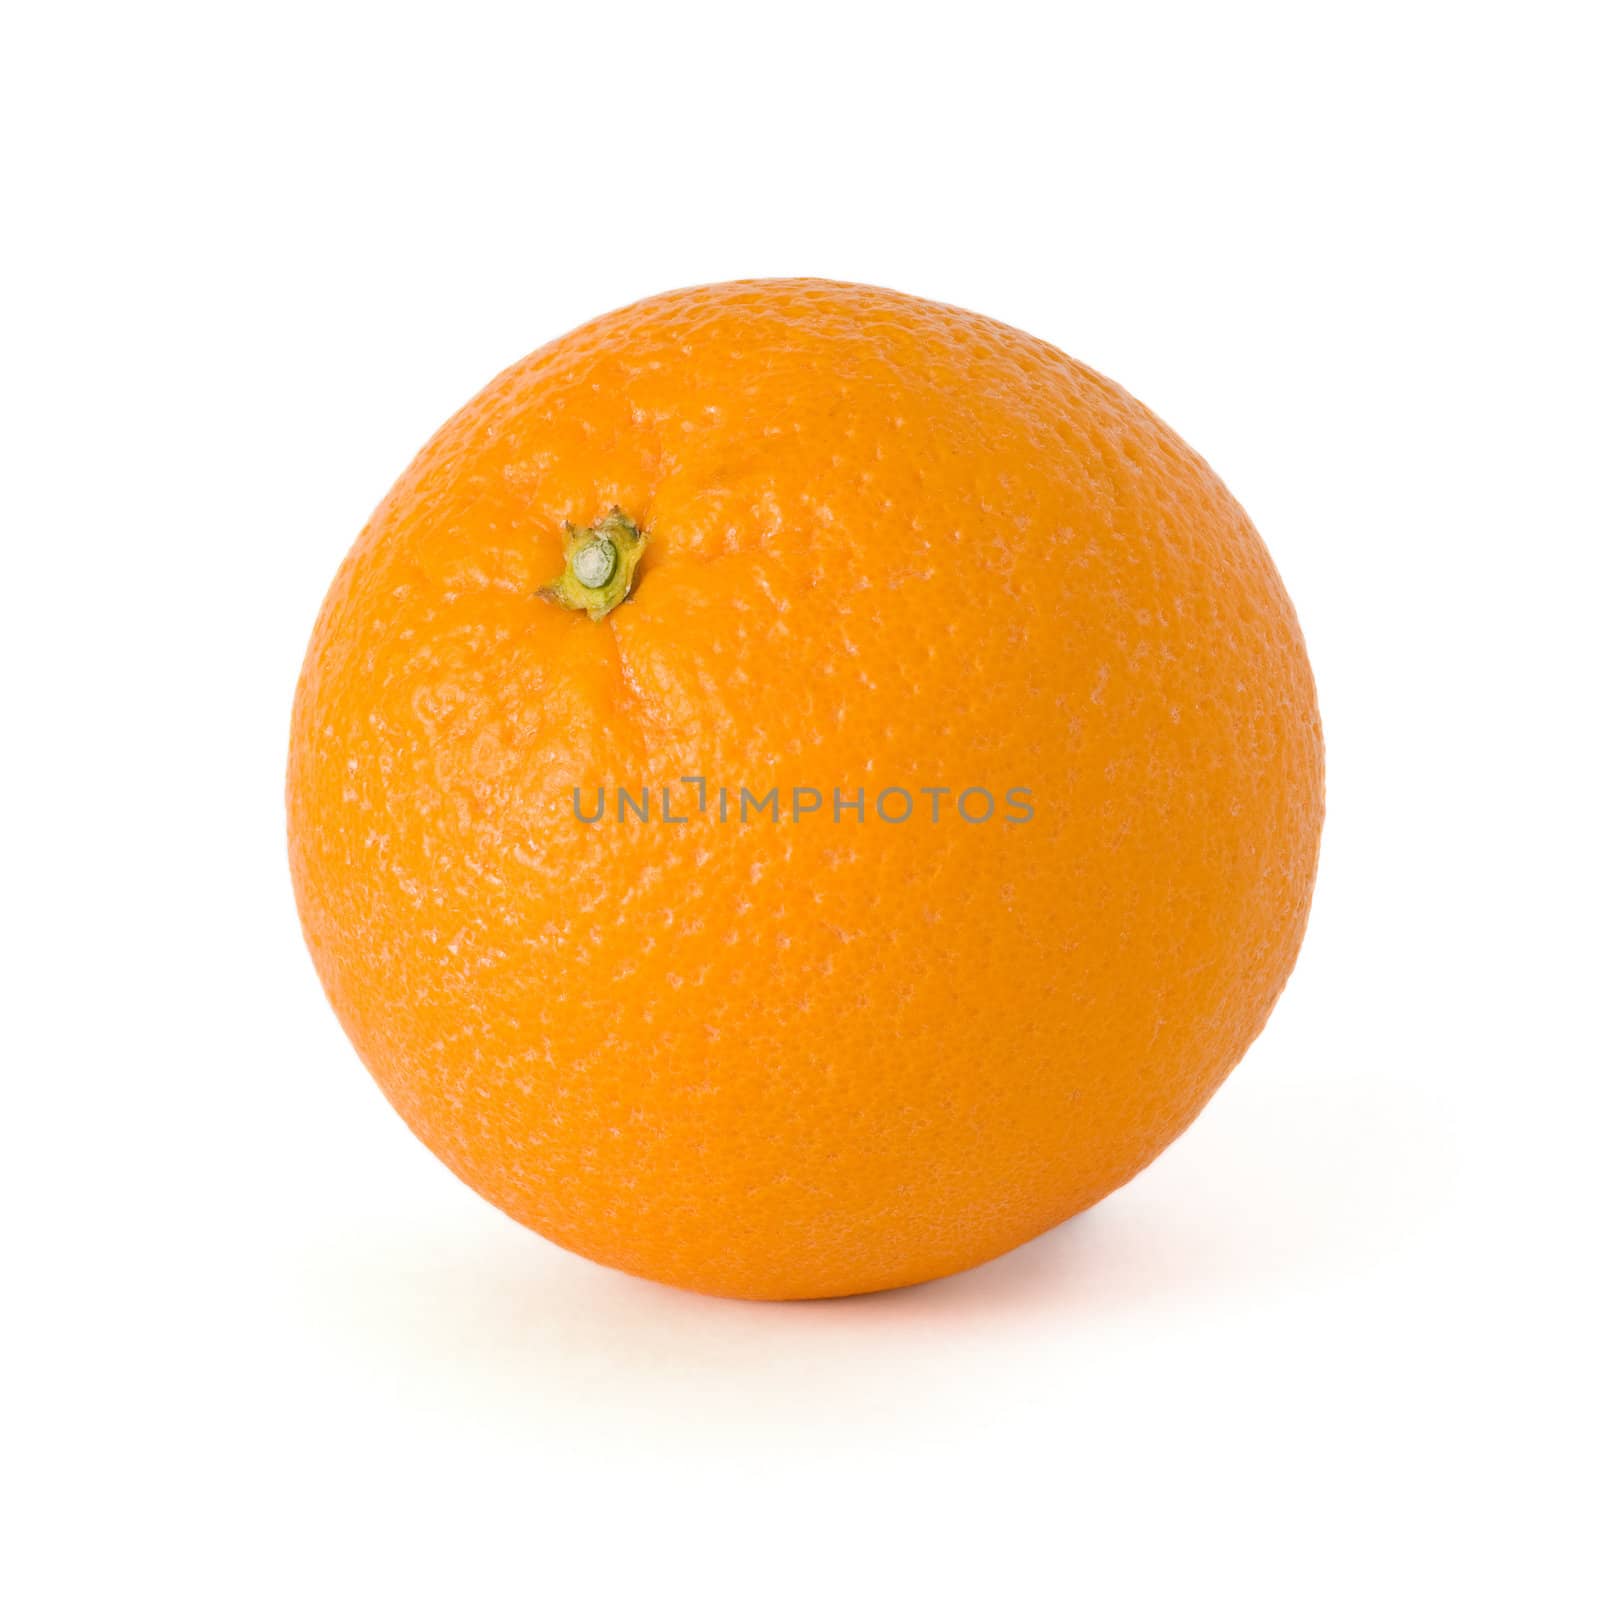 Single orange isolated on a white background